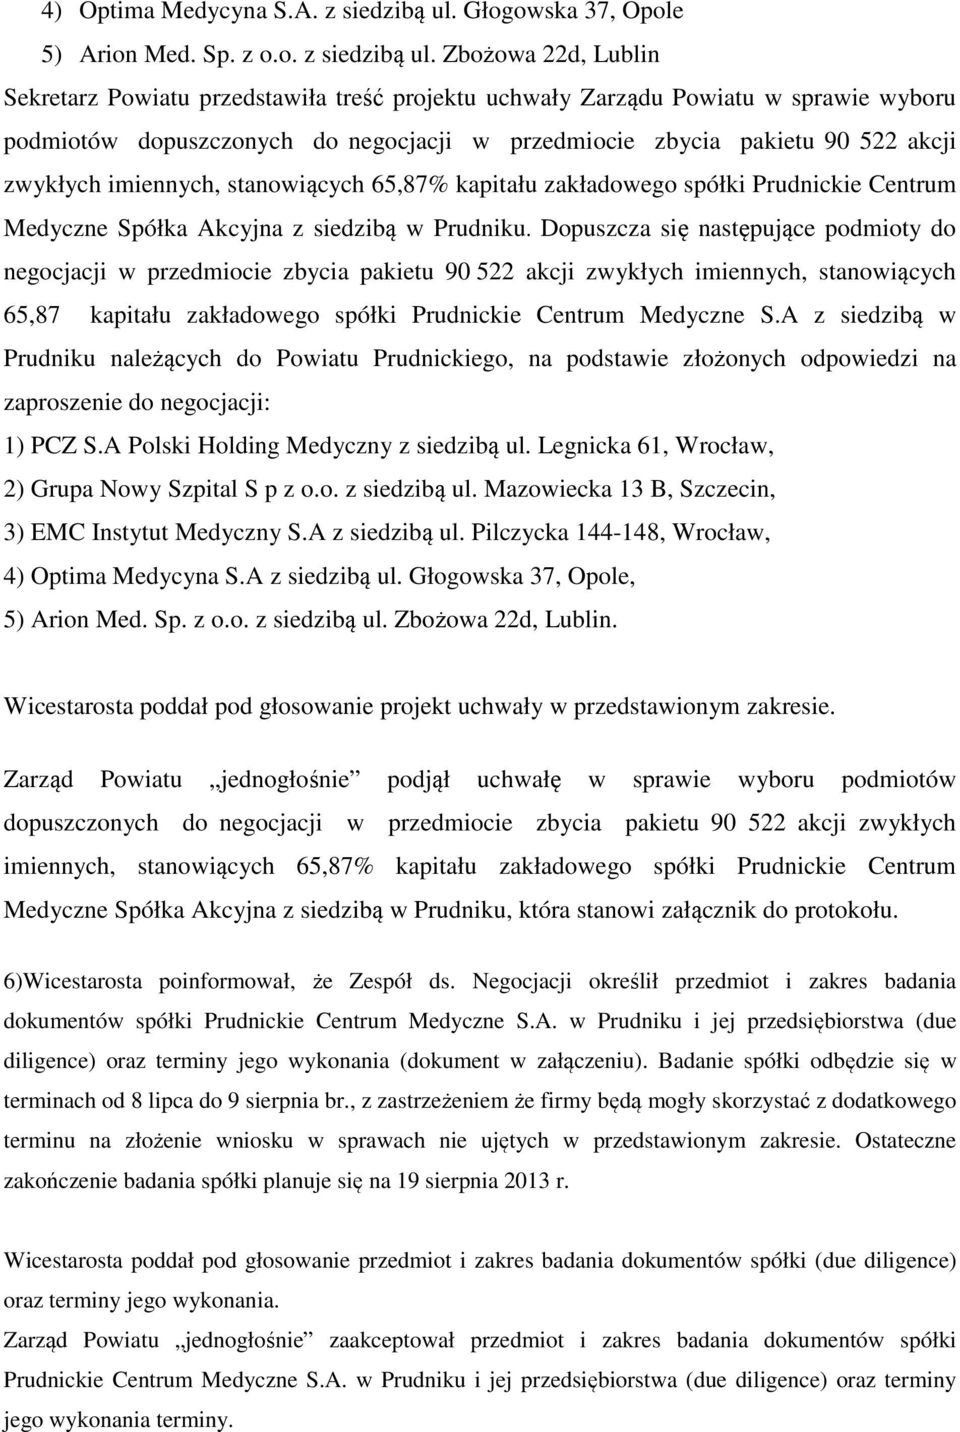 Zbożowa 22d, Lublin Sekretarz Powiatu przedstawiła treść projektu uchwały Zarządu Powiatu w sprawie wyboru podmiotów dopuszczonych do negocjacji w przedmiocie zbycia pakietu 90 522 akcji zwykłych